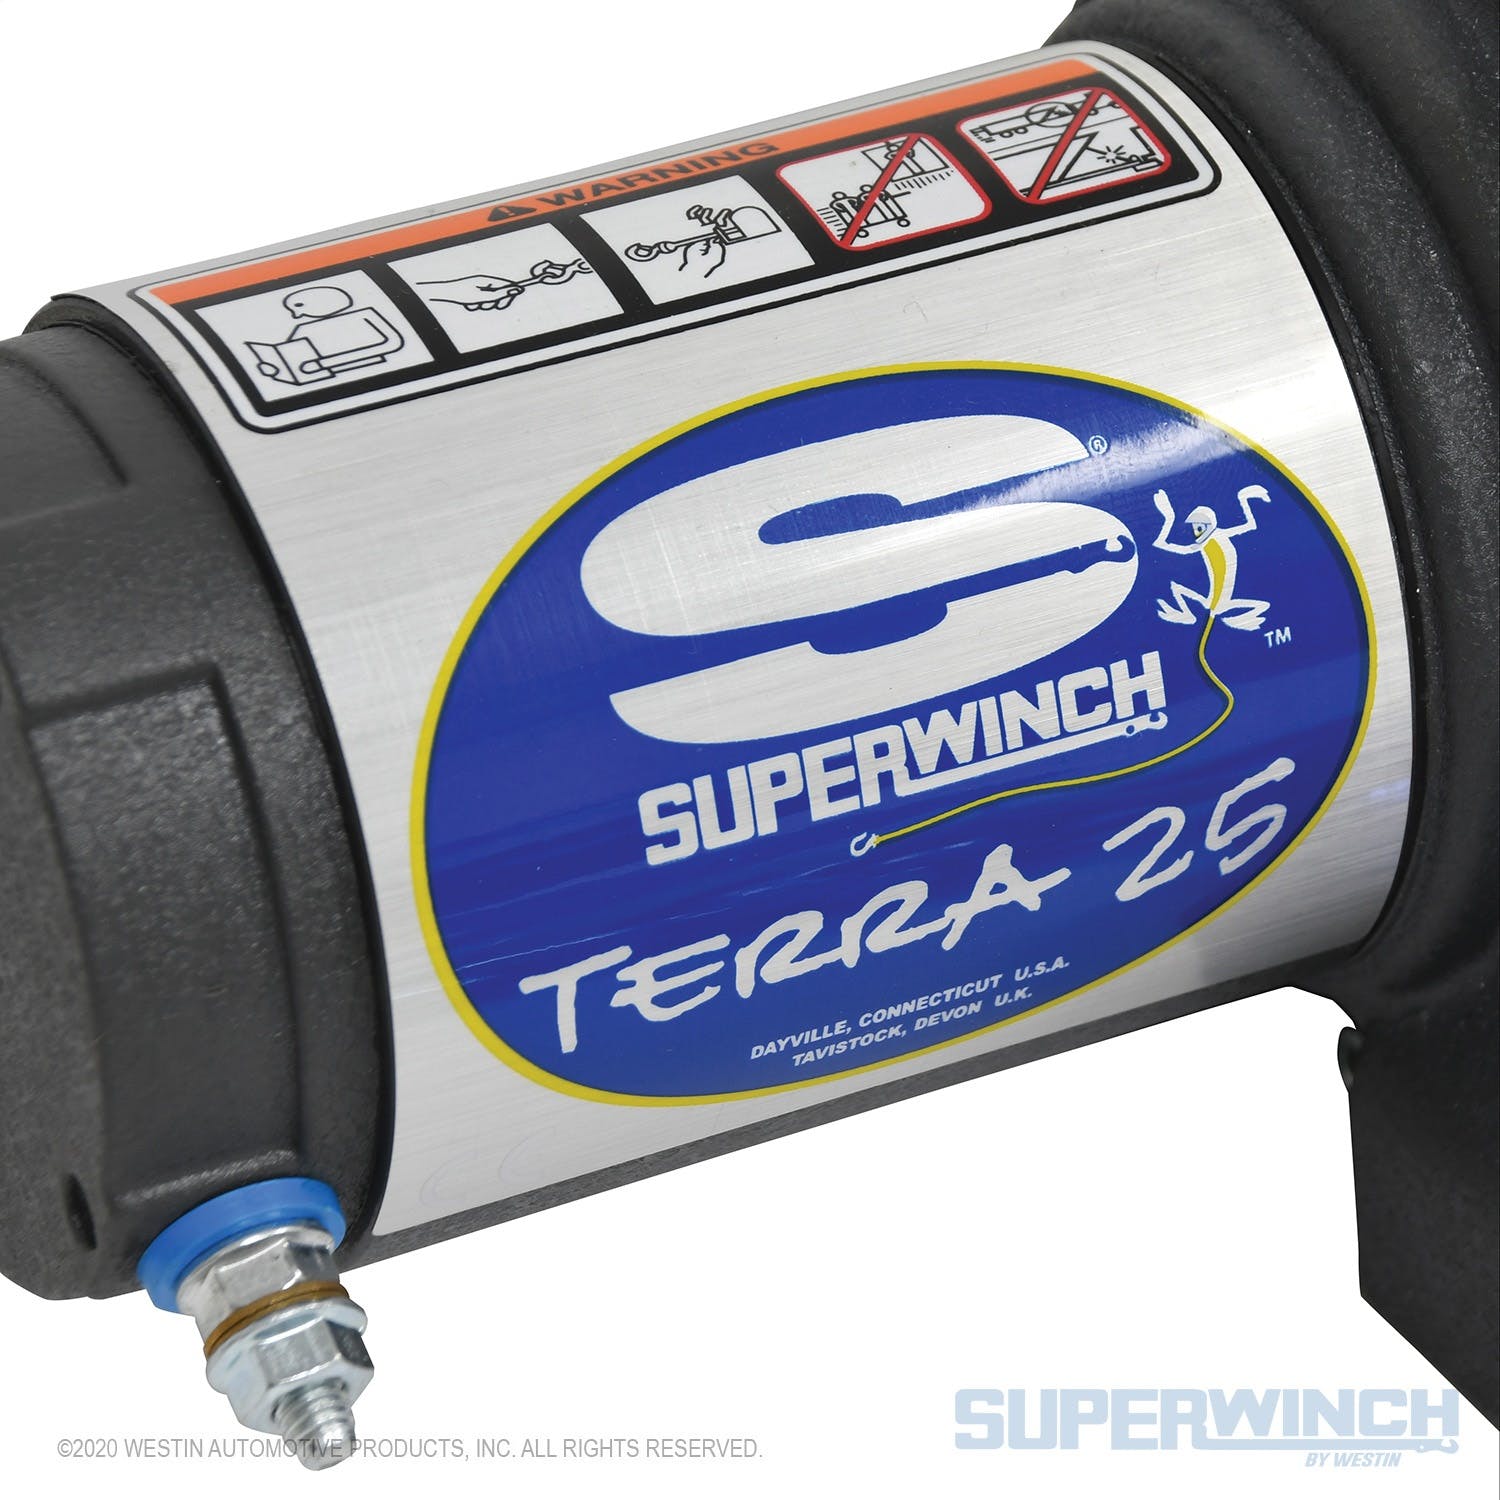 Superwinch 1125230 Terra 25SR Winch